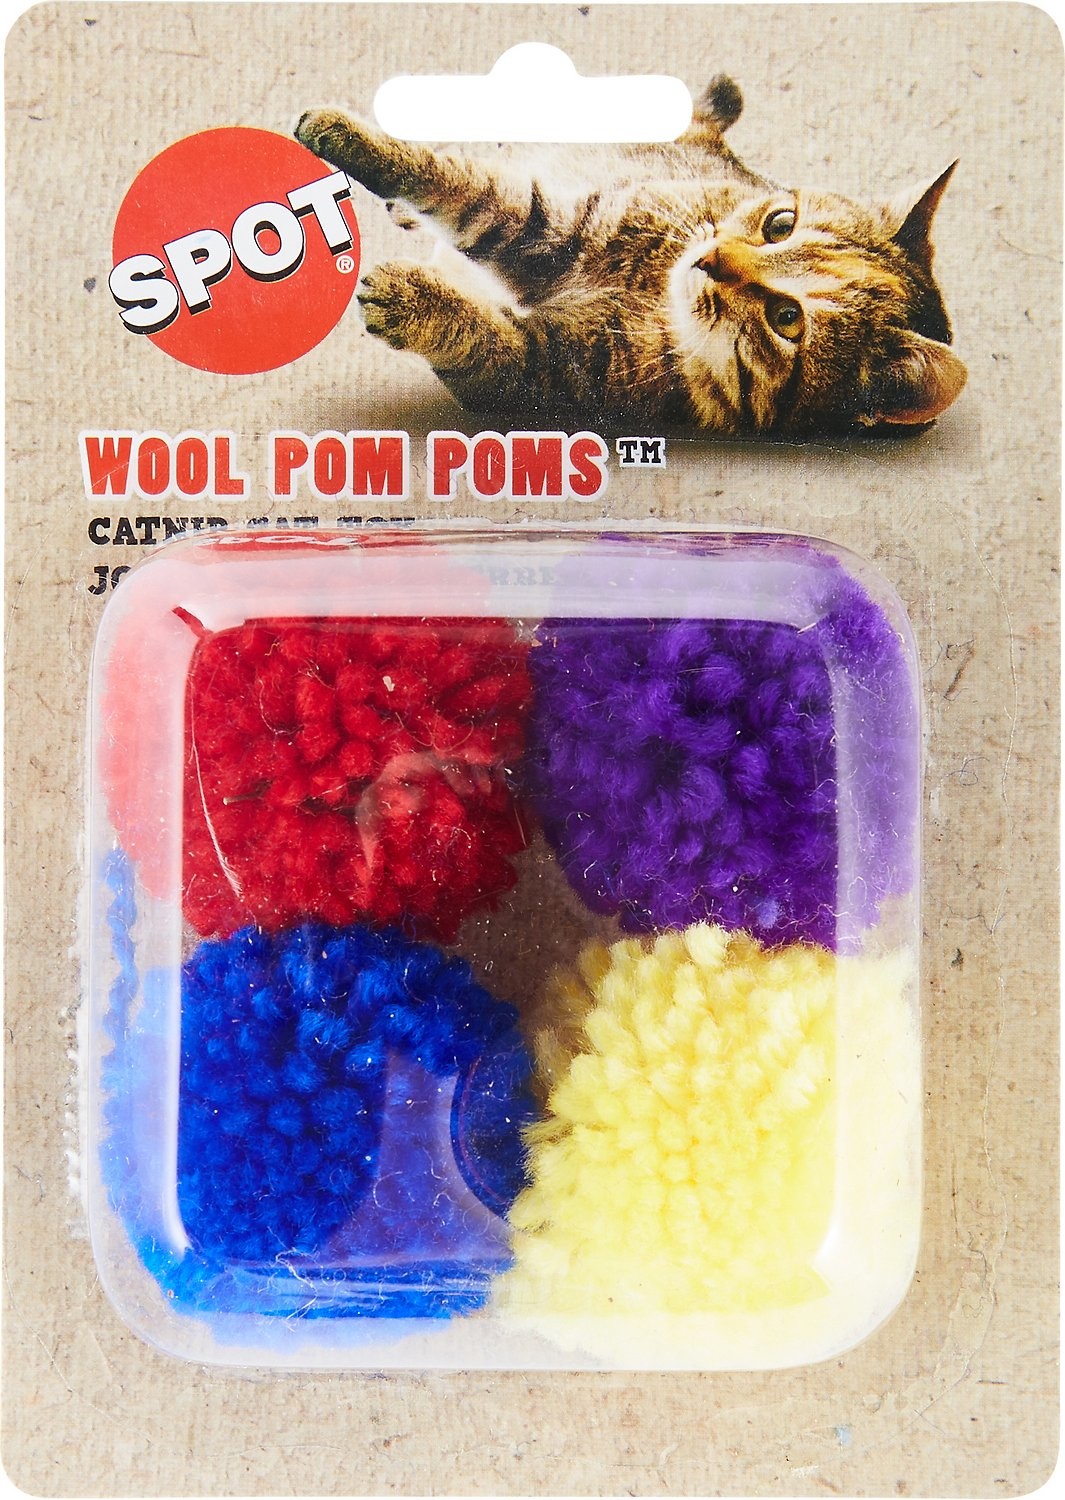 Spot Spotnips Catnip Toy, Wool Pom Poms with Catnip - 4 each